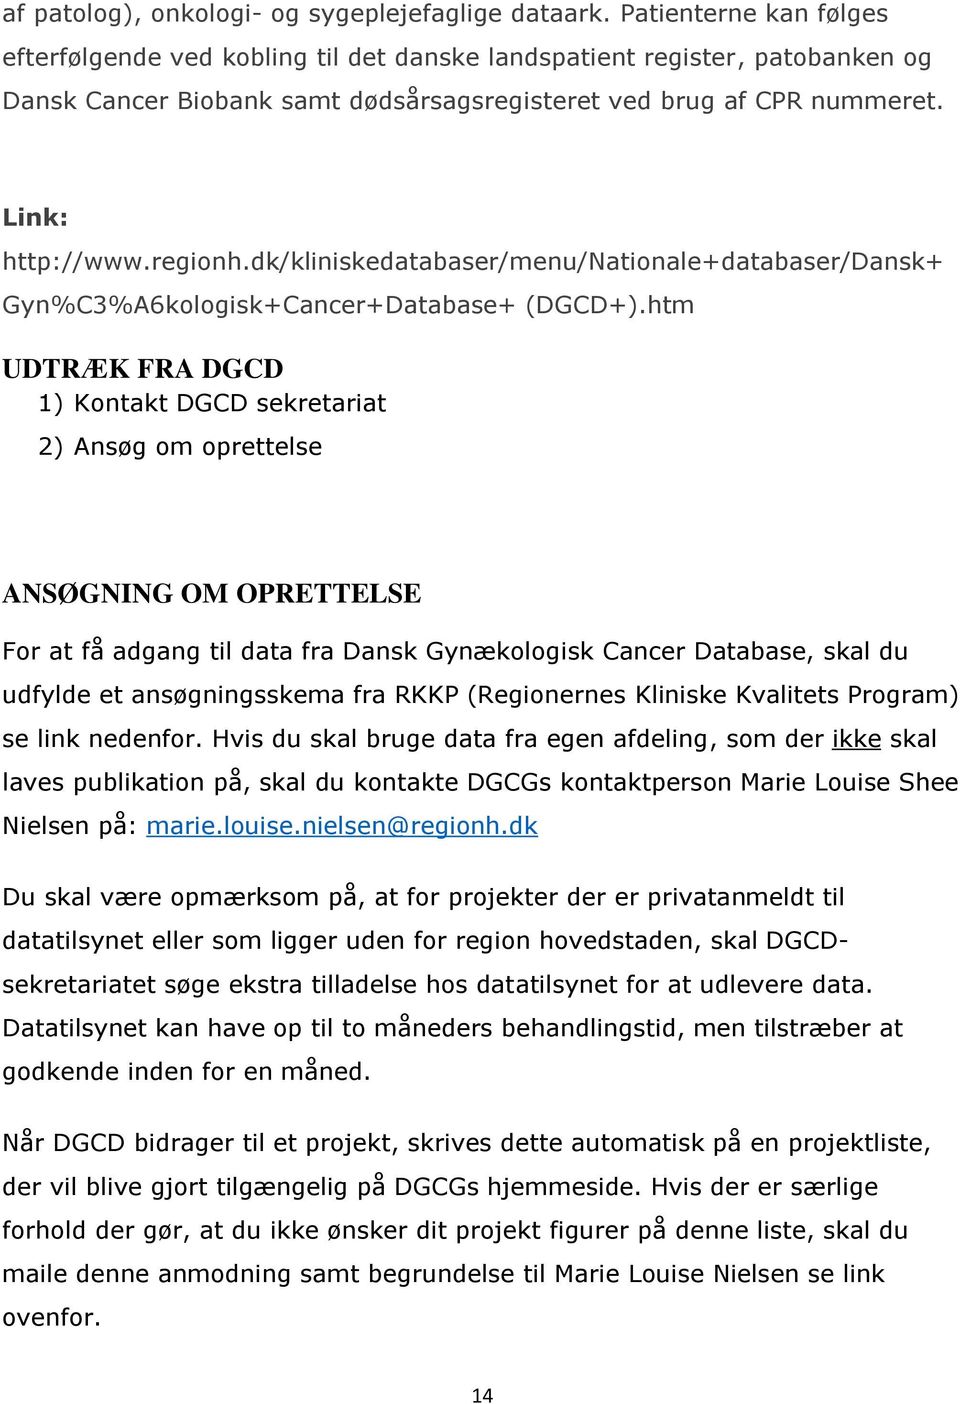 dk/kliniskedatabaser/menu/nationale+databaser/dansk+ Gyn%C3%A6kologisk+Cancer+Database+ (DGCD+).